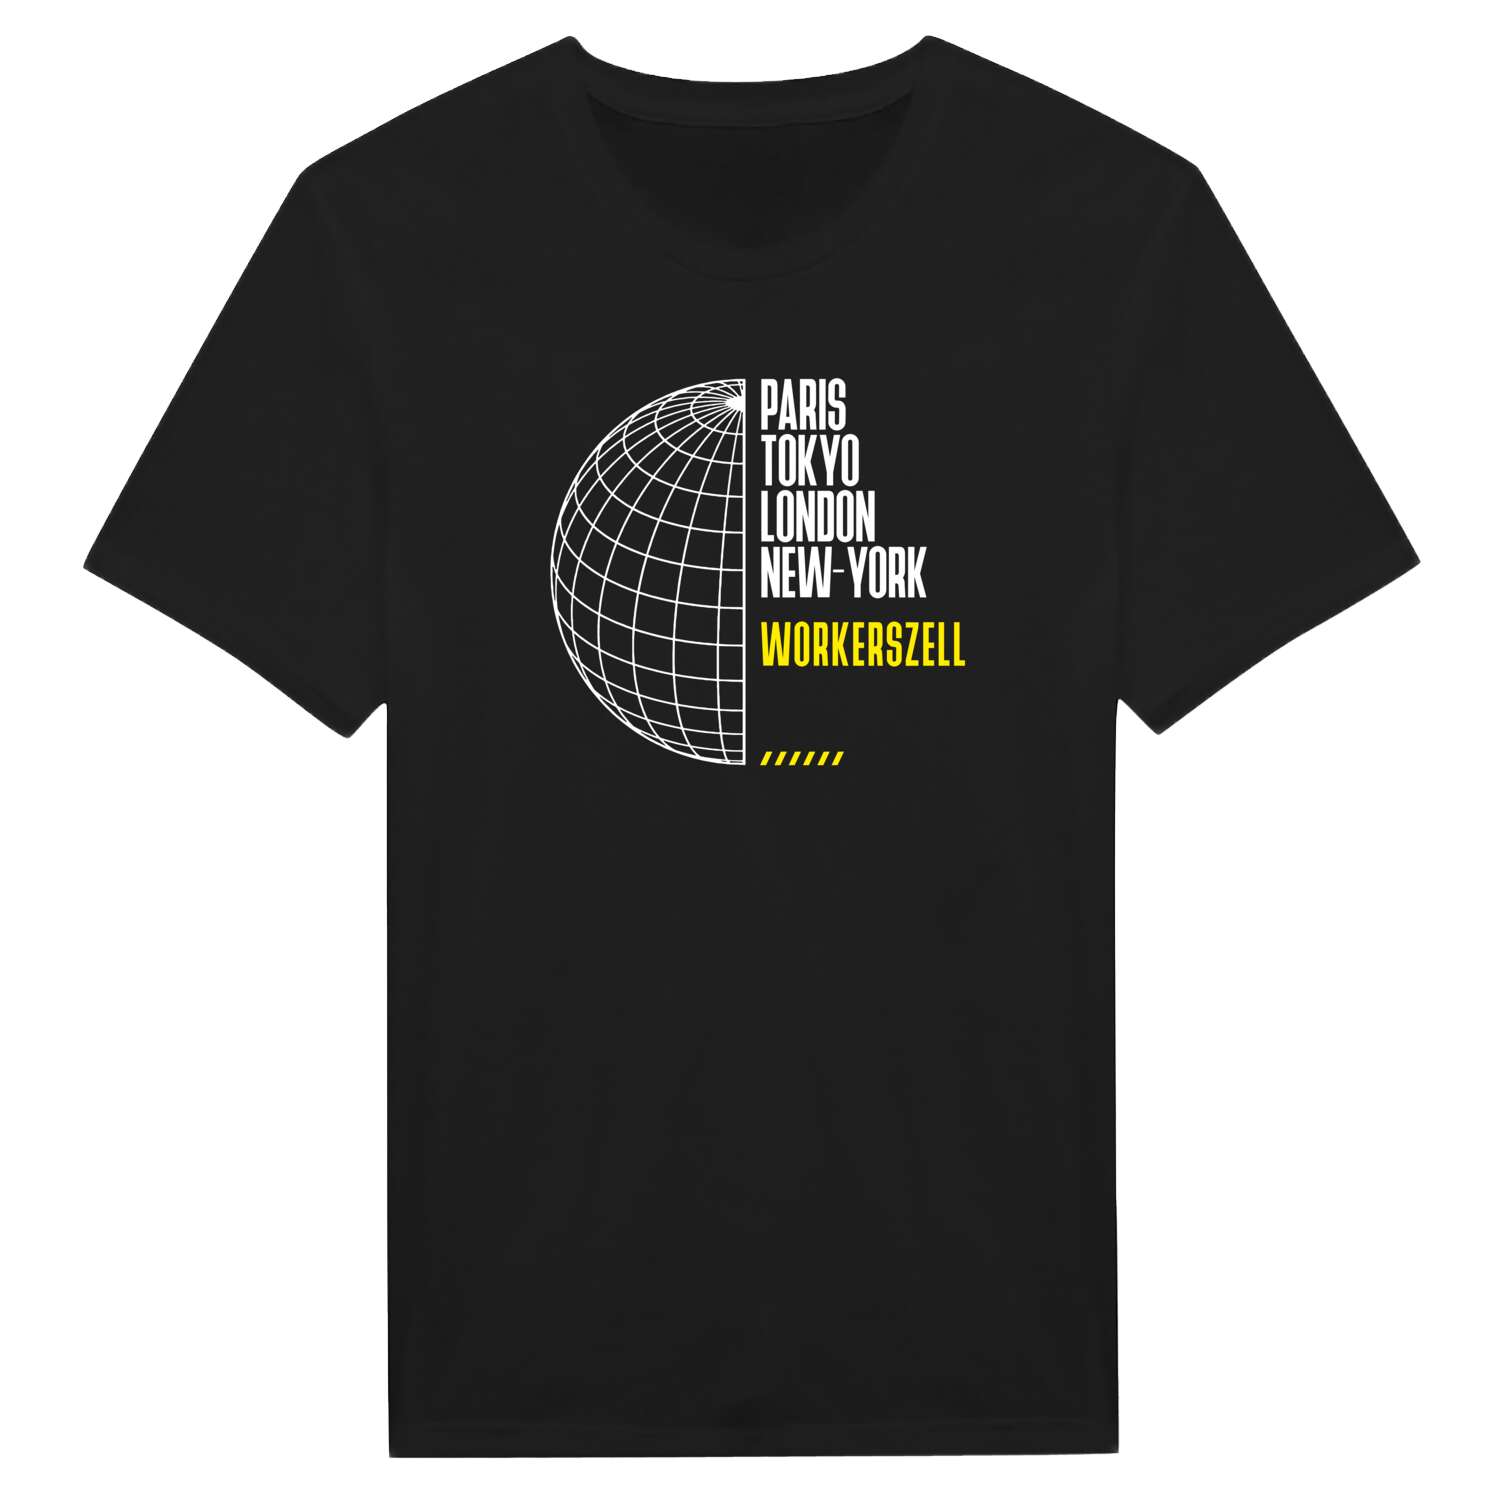 Workerszell T-Shirt »Paris Tokyo London«